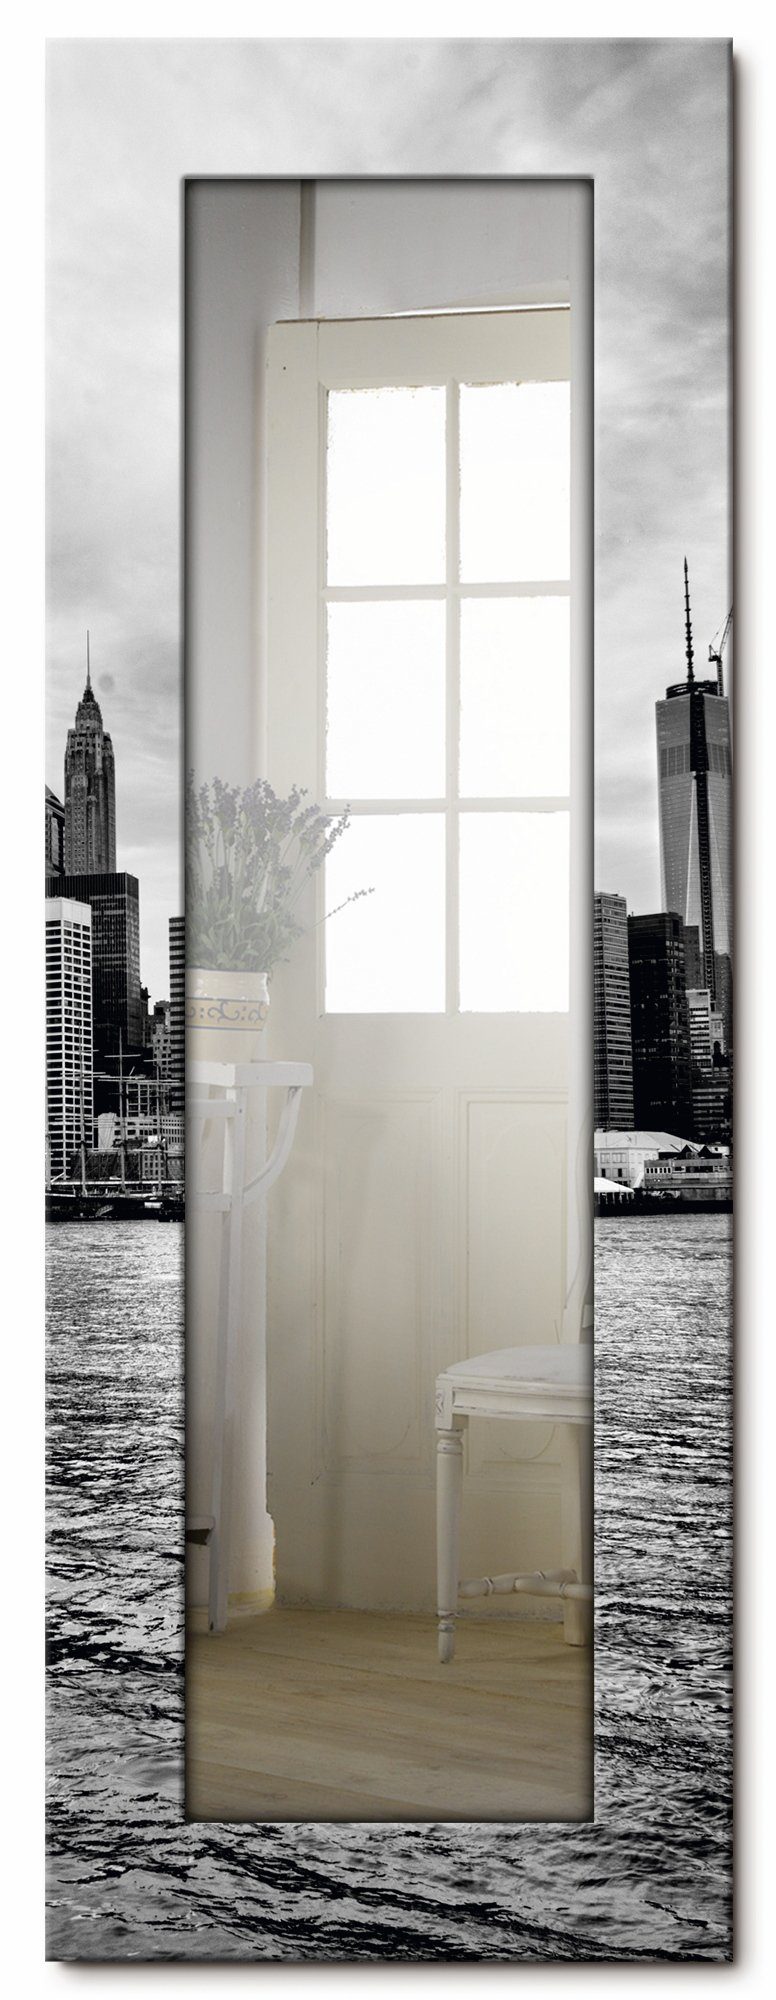 Artland Dekospiegel Lower Manhattan Skyline, Motivrahmen, Wandspiegel, gerahmter Ganzkörperspiegel, Landhaus mit